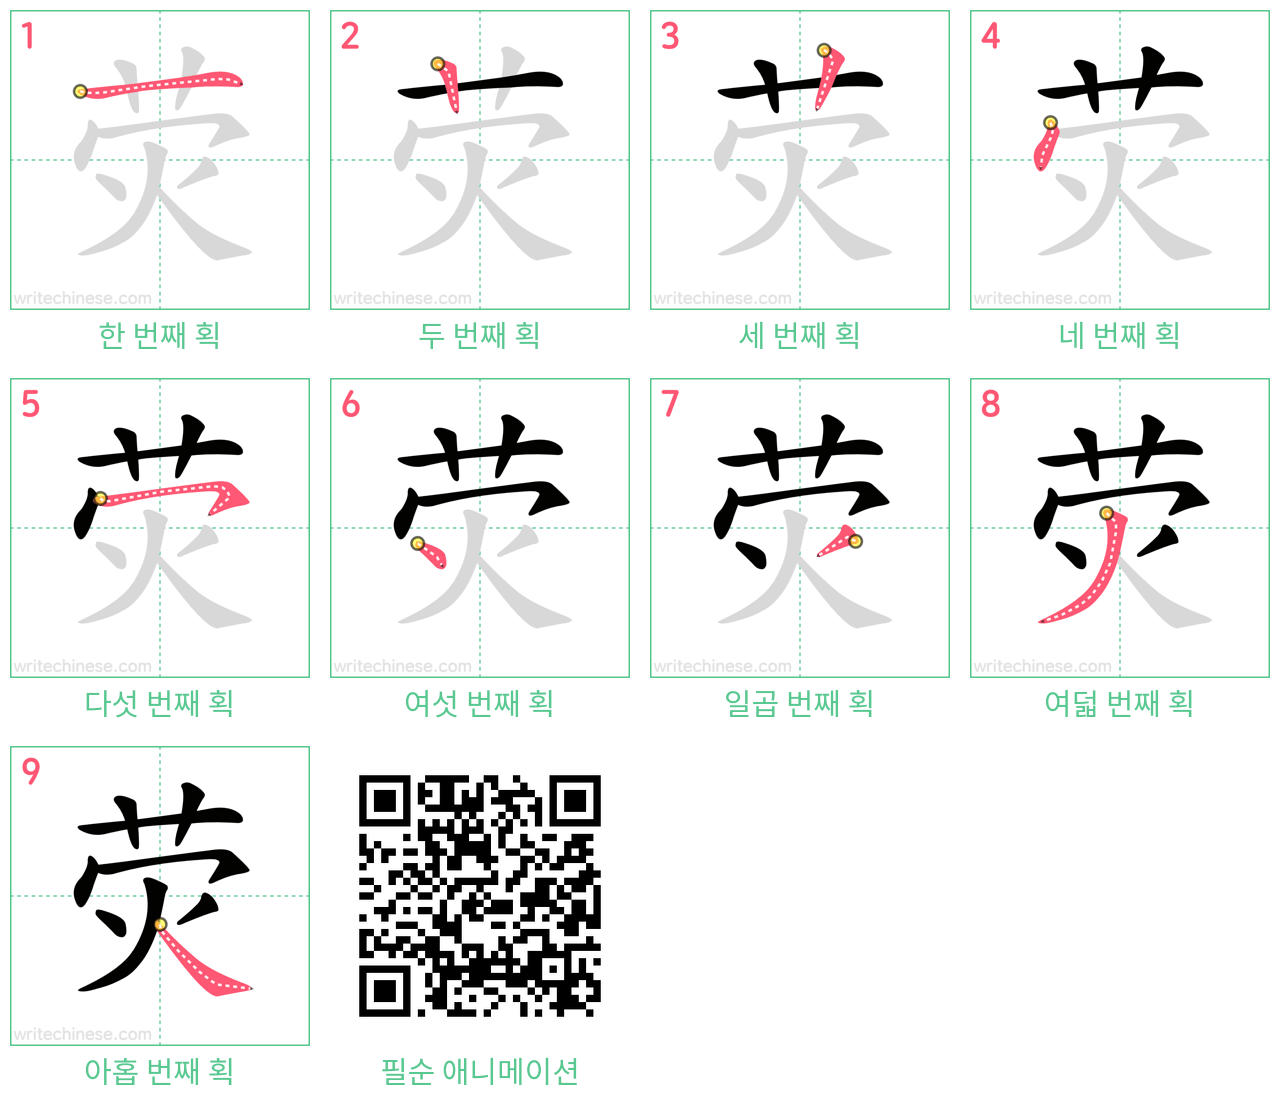 荧 step-by-step stroke order diagrams